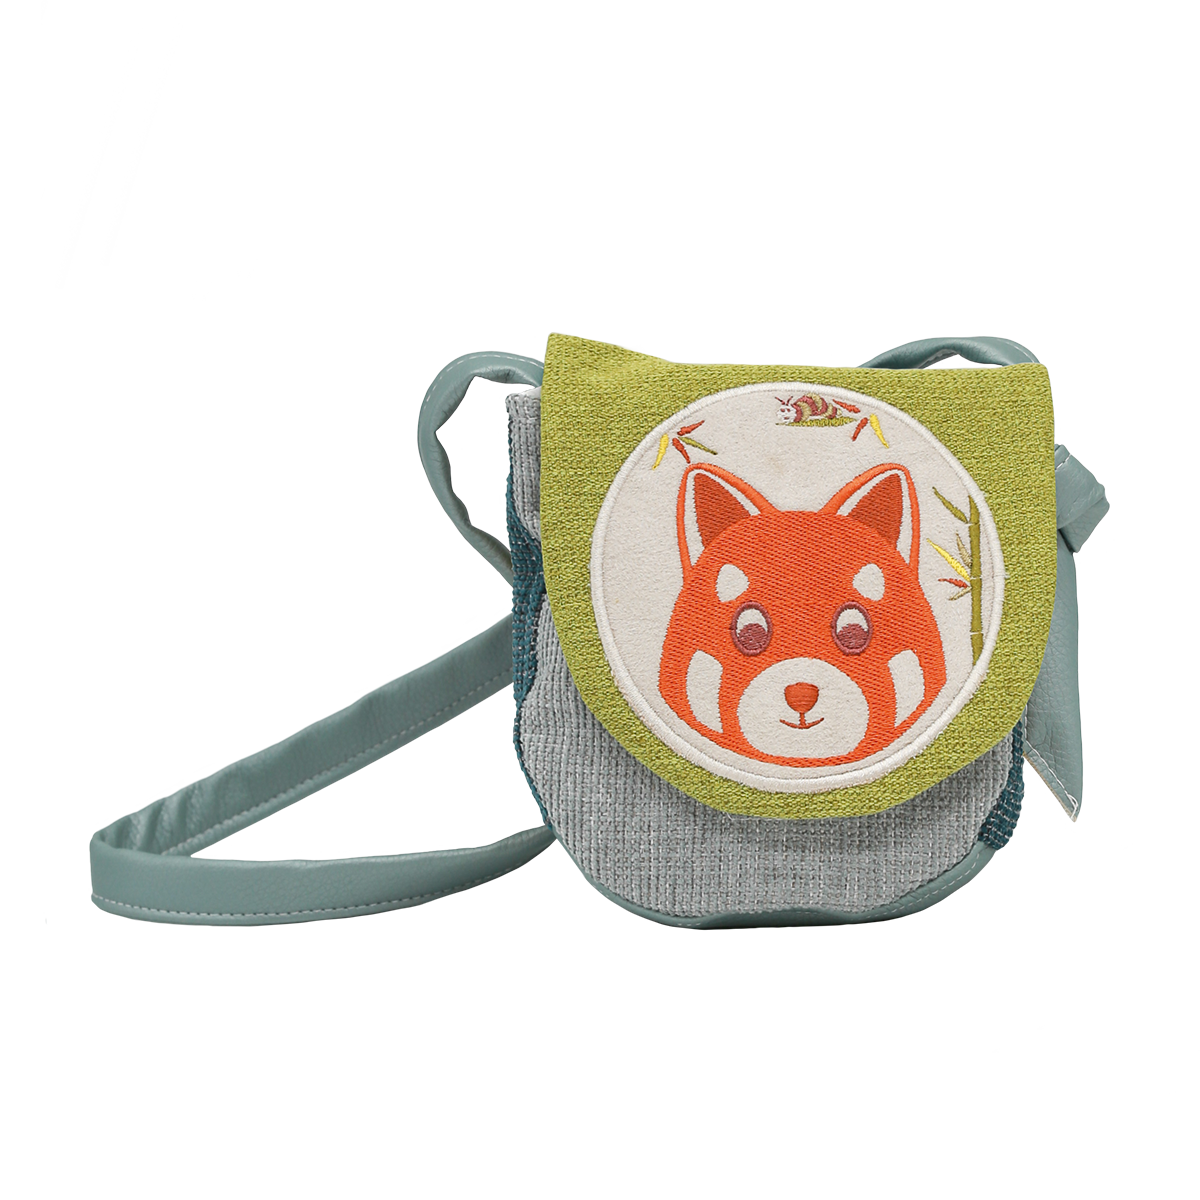 Children's messenger bag - Red panda 